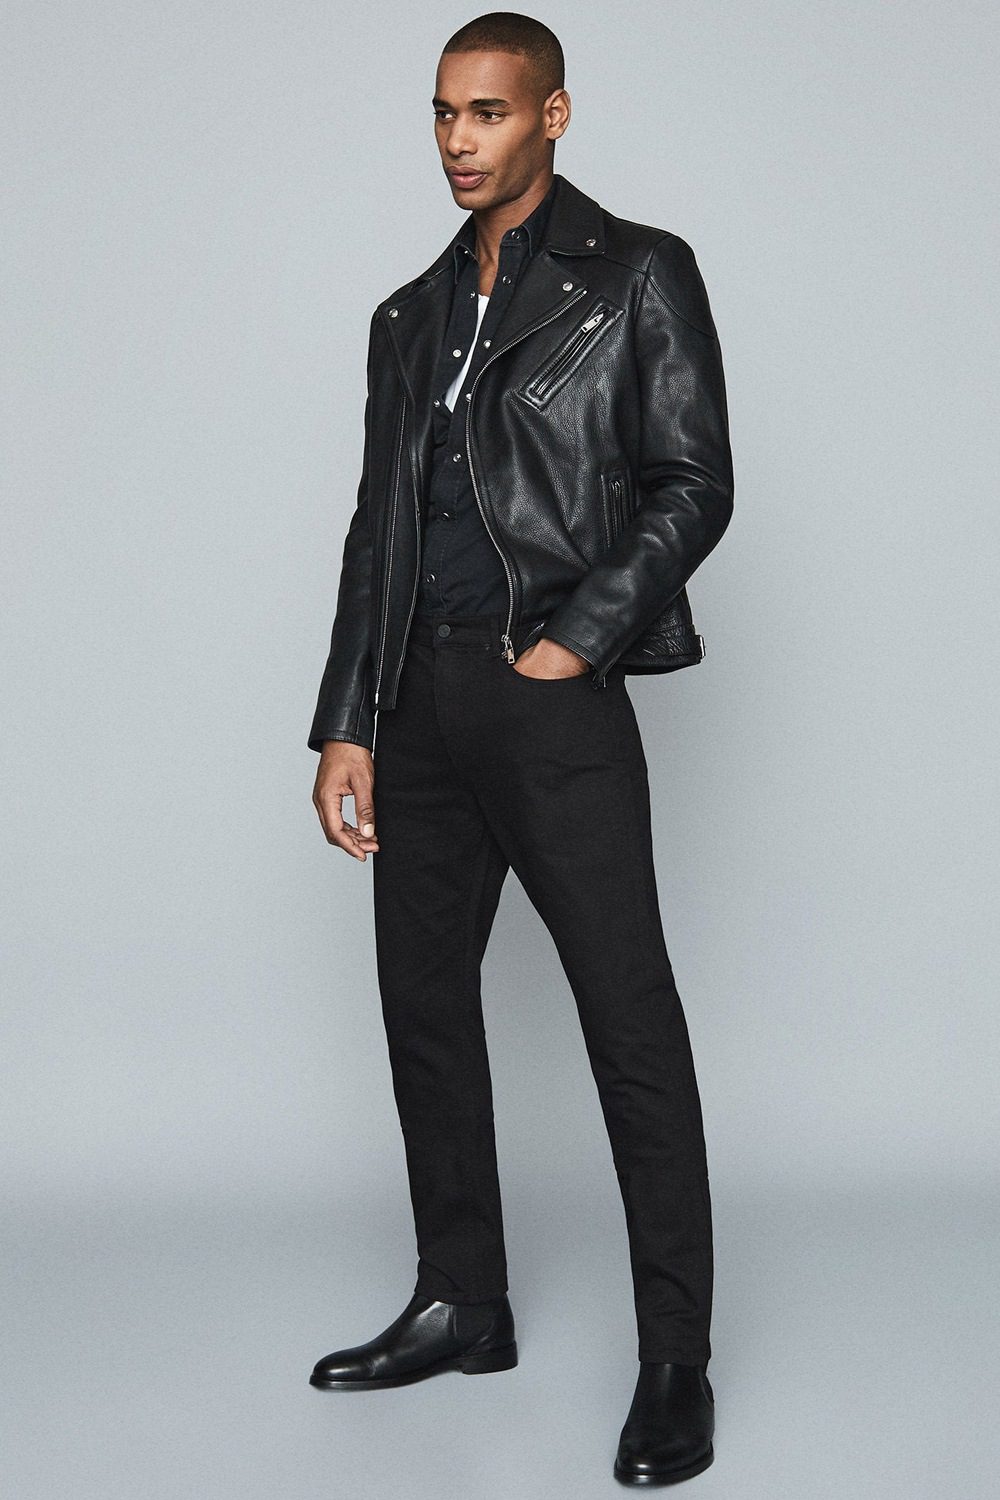 verklaren Raad negeren What To Wear With Black Jeans: 6 Forever Stylish Looks For Men